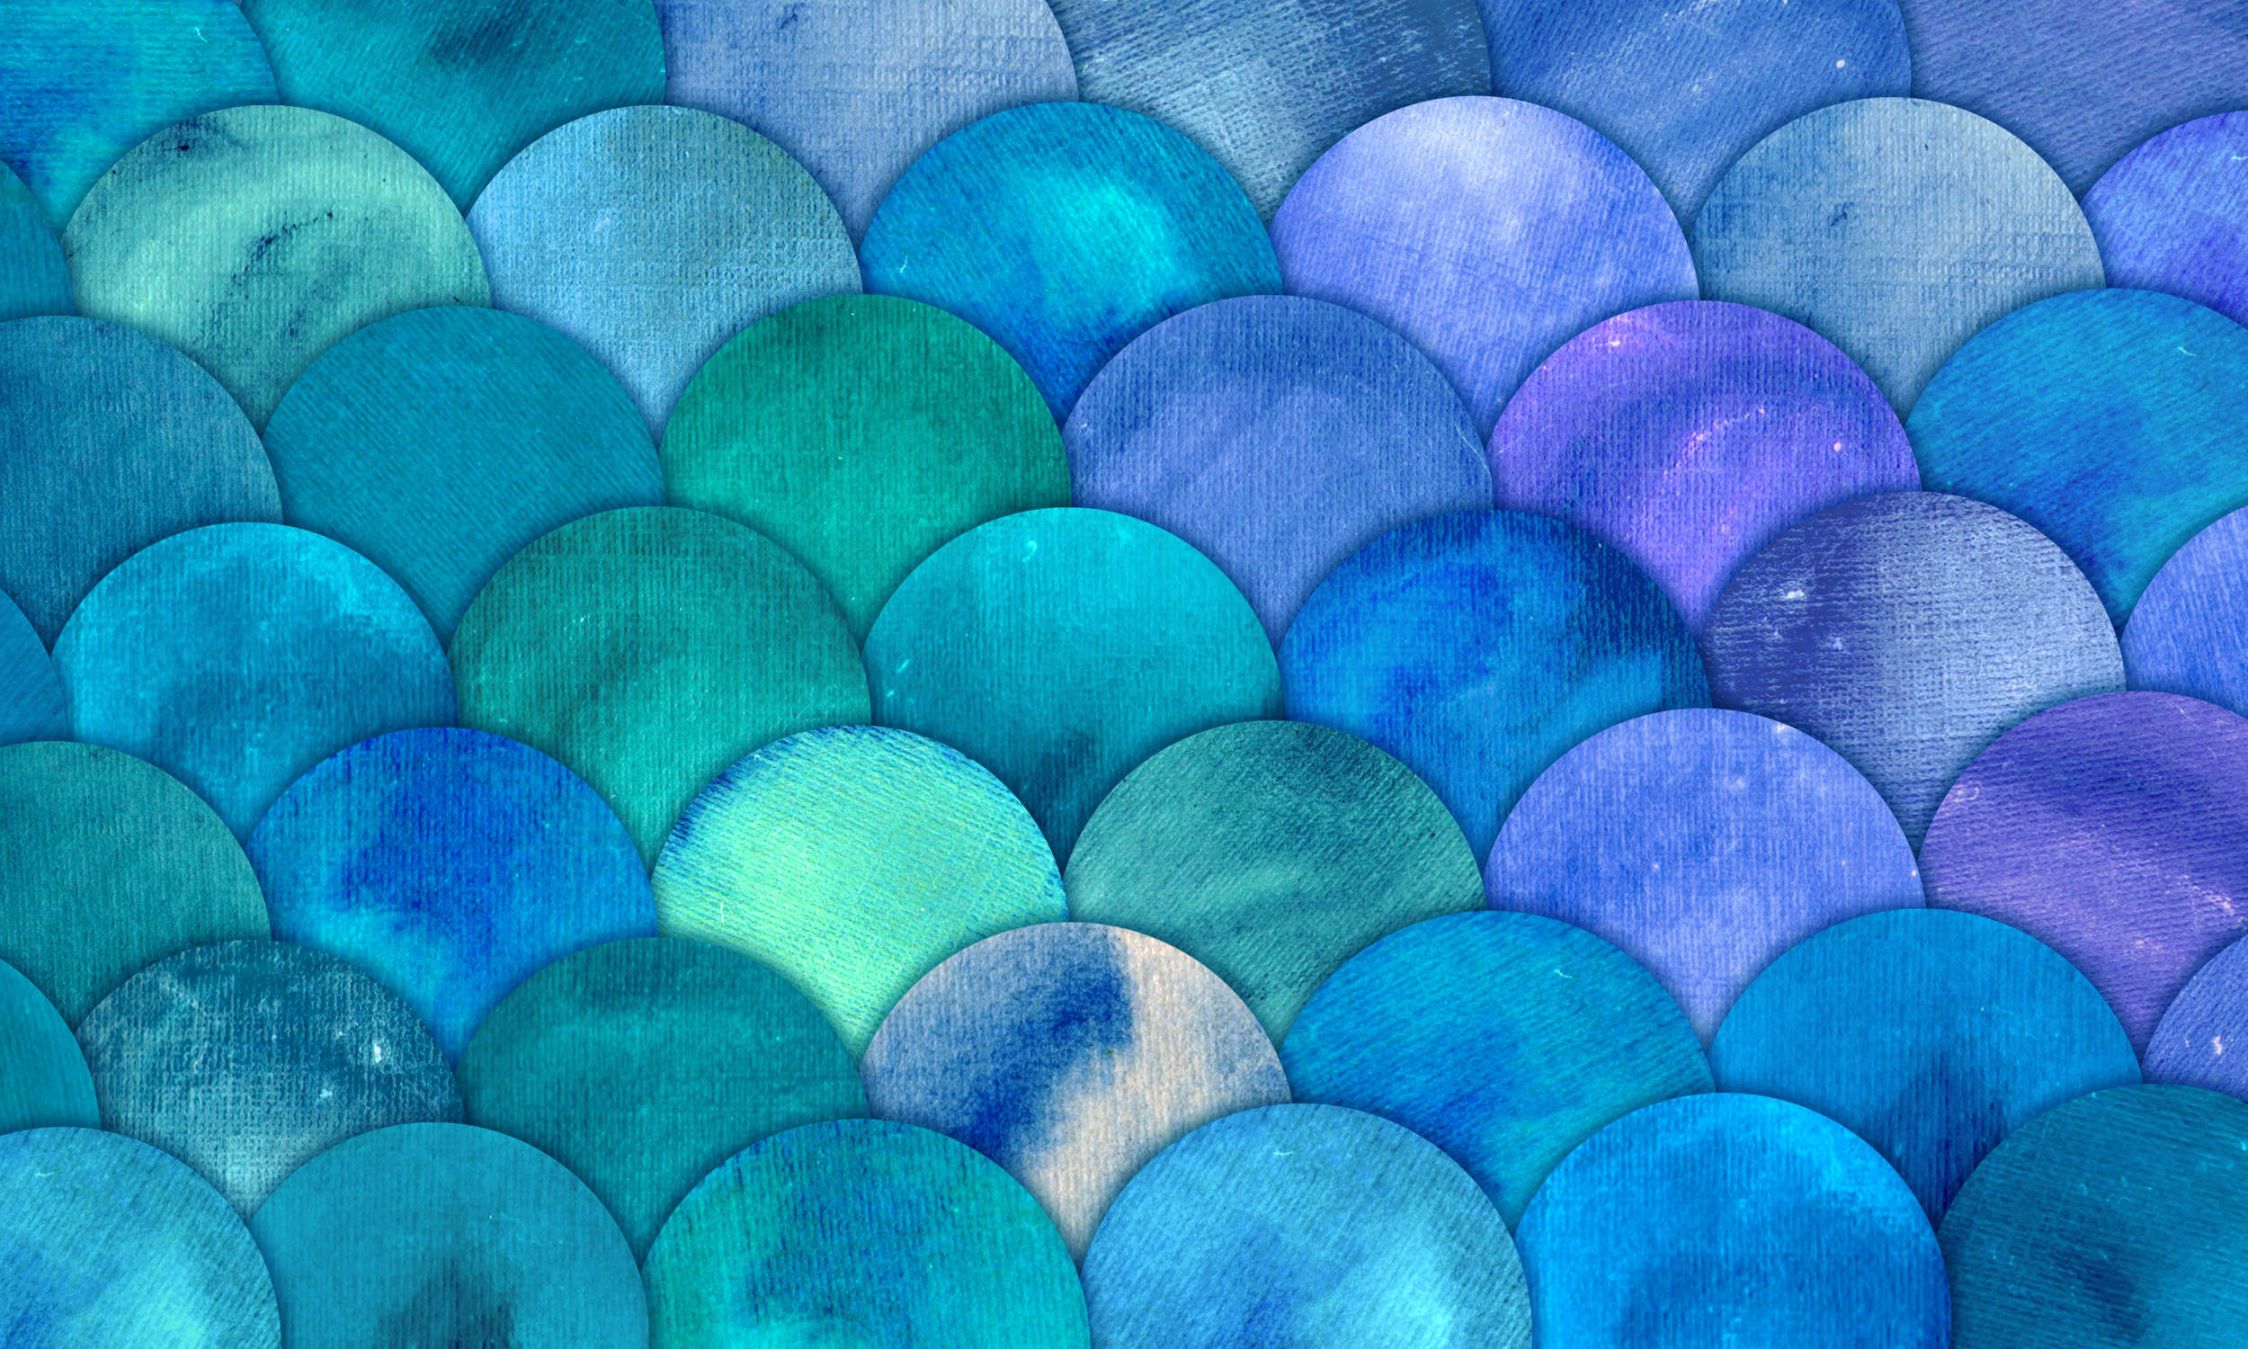             Fototapete mit Fischschuppen Muster – Glattes & mattes Vlies
        